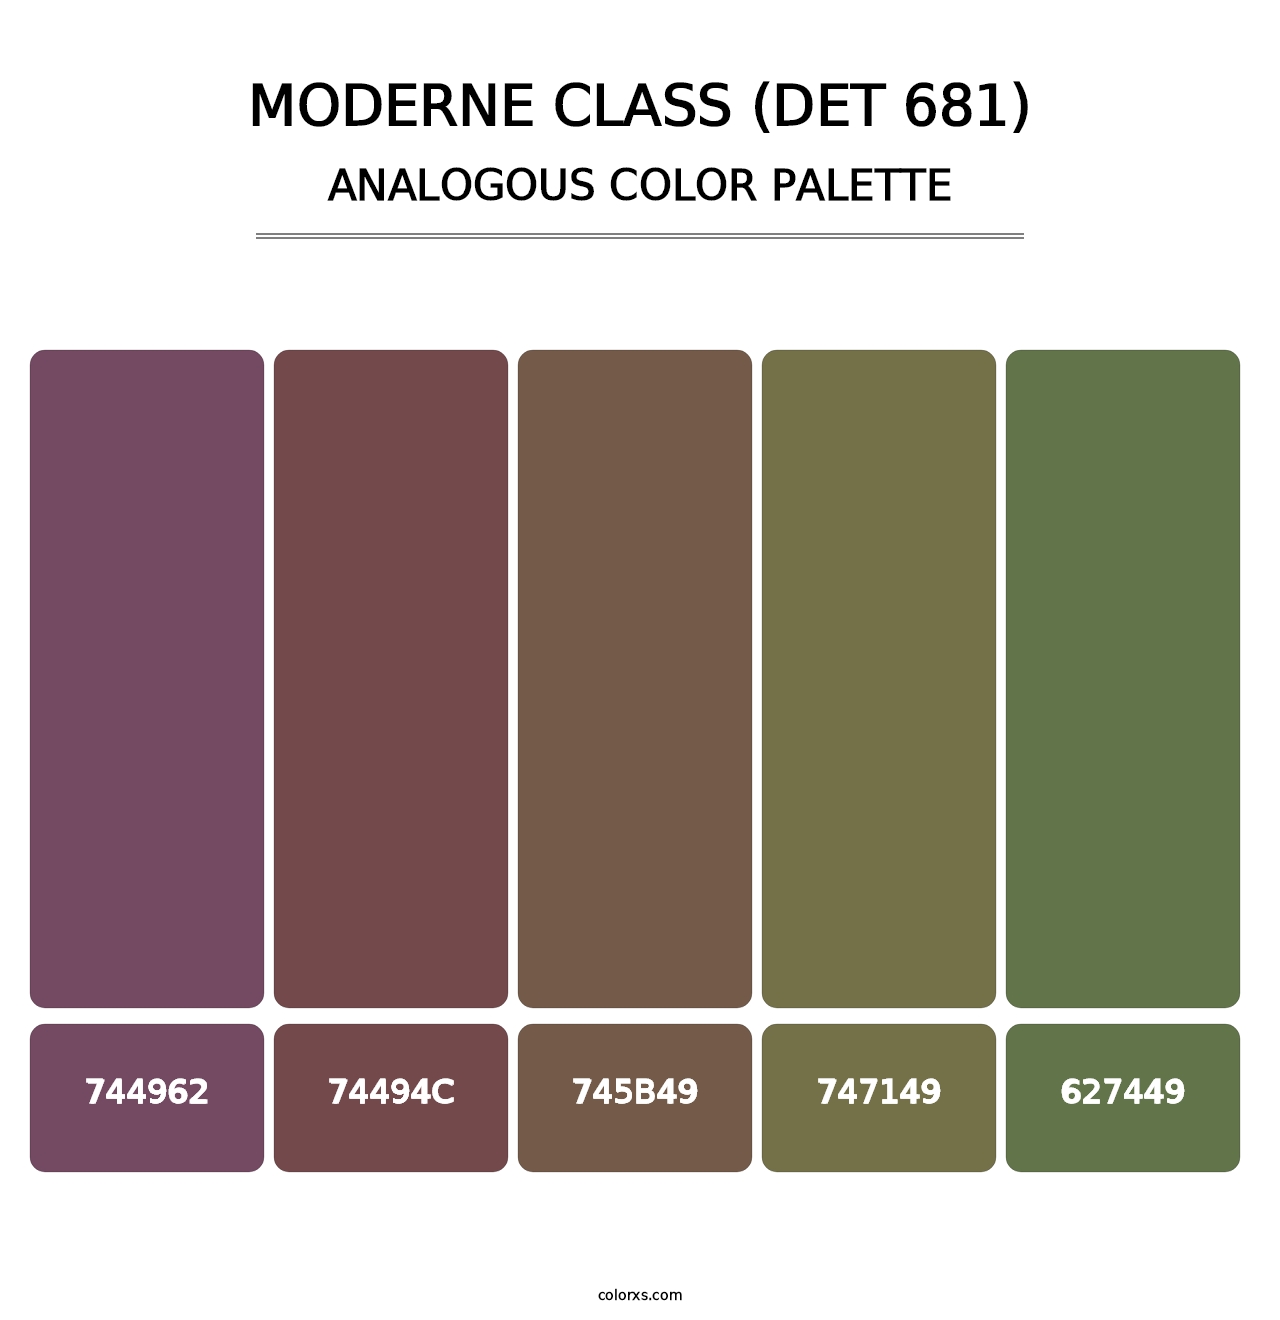 Moderne Class (DET 681) - Analogous Color Palette